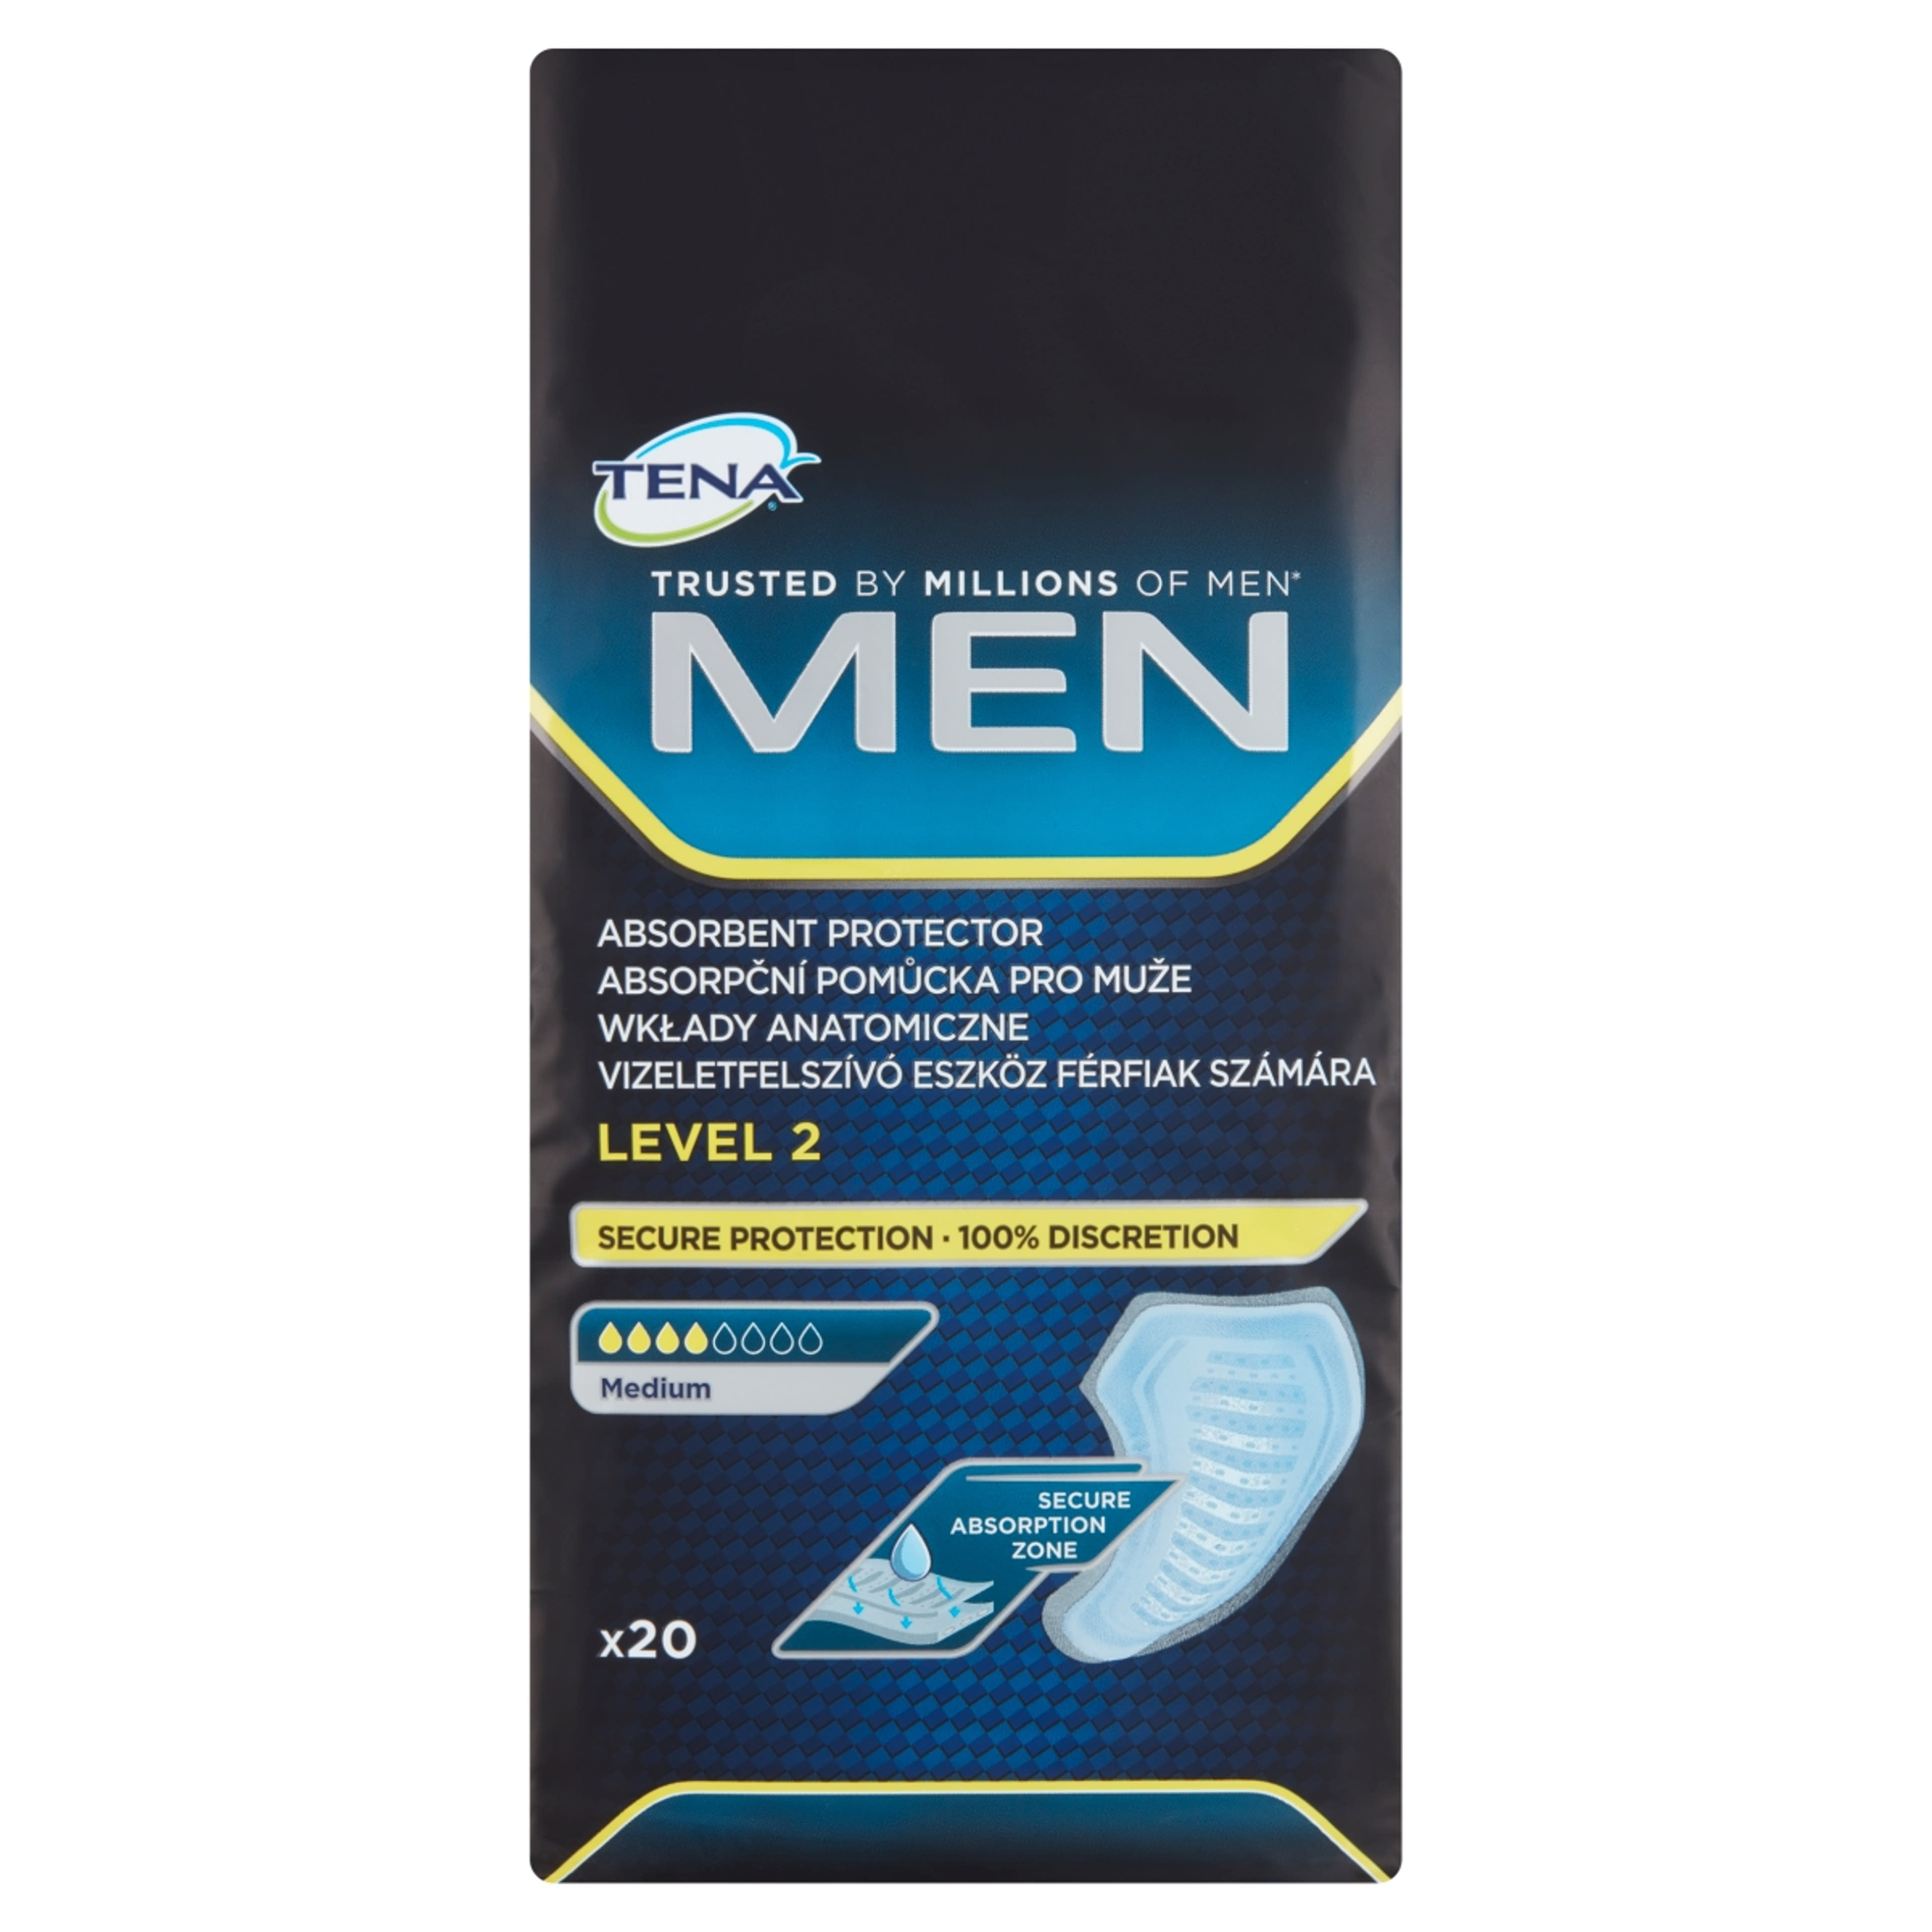 Tena Men Level 2 Medium vizeletfelszívó eszköz férfiak számára - 20 db